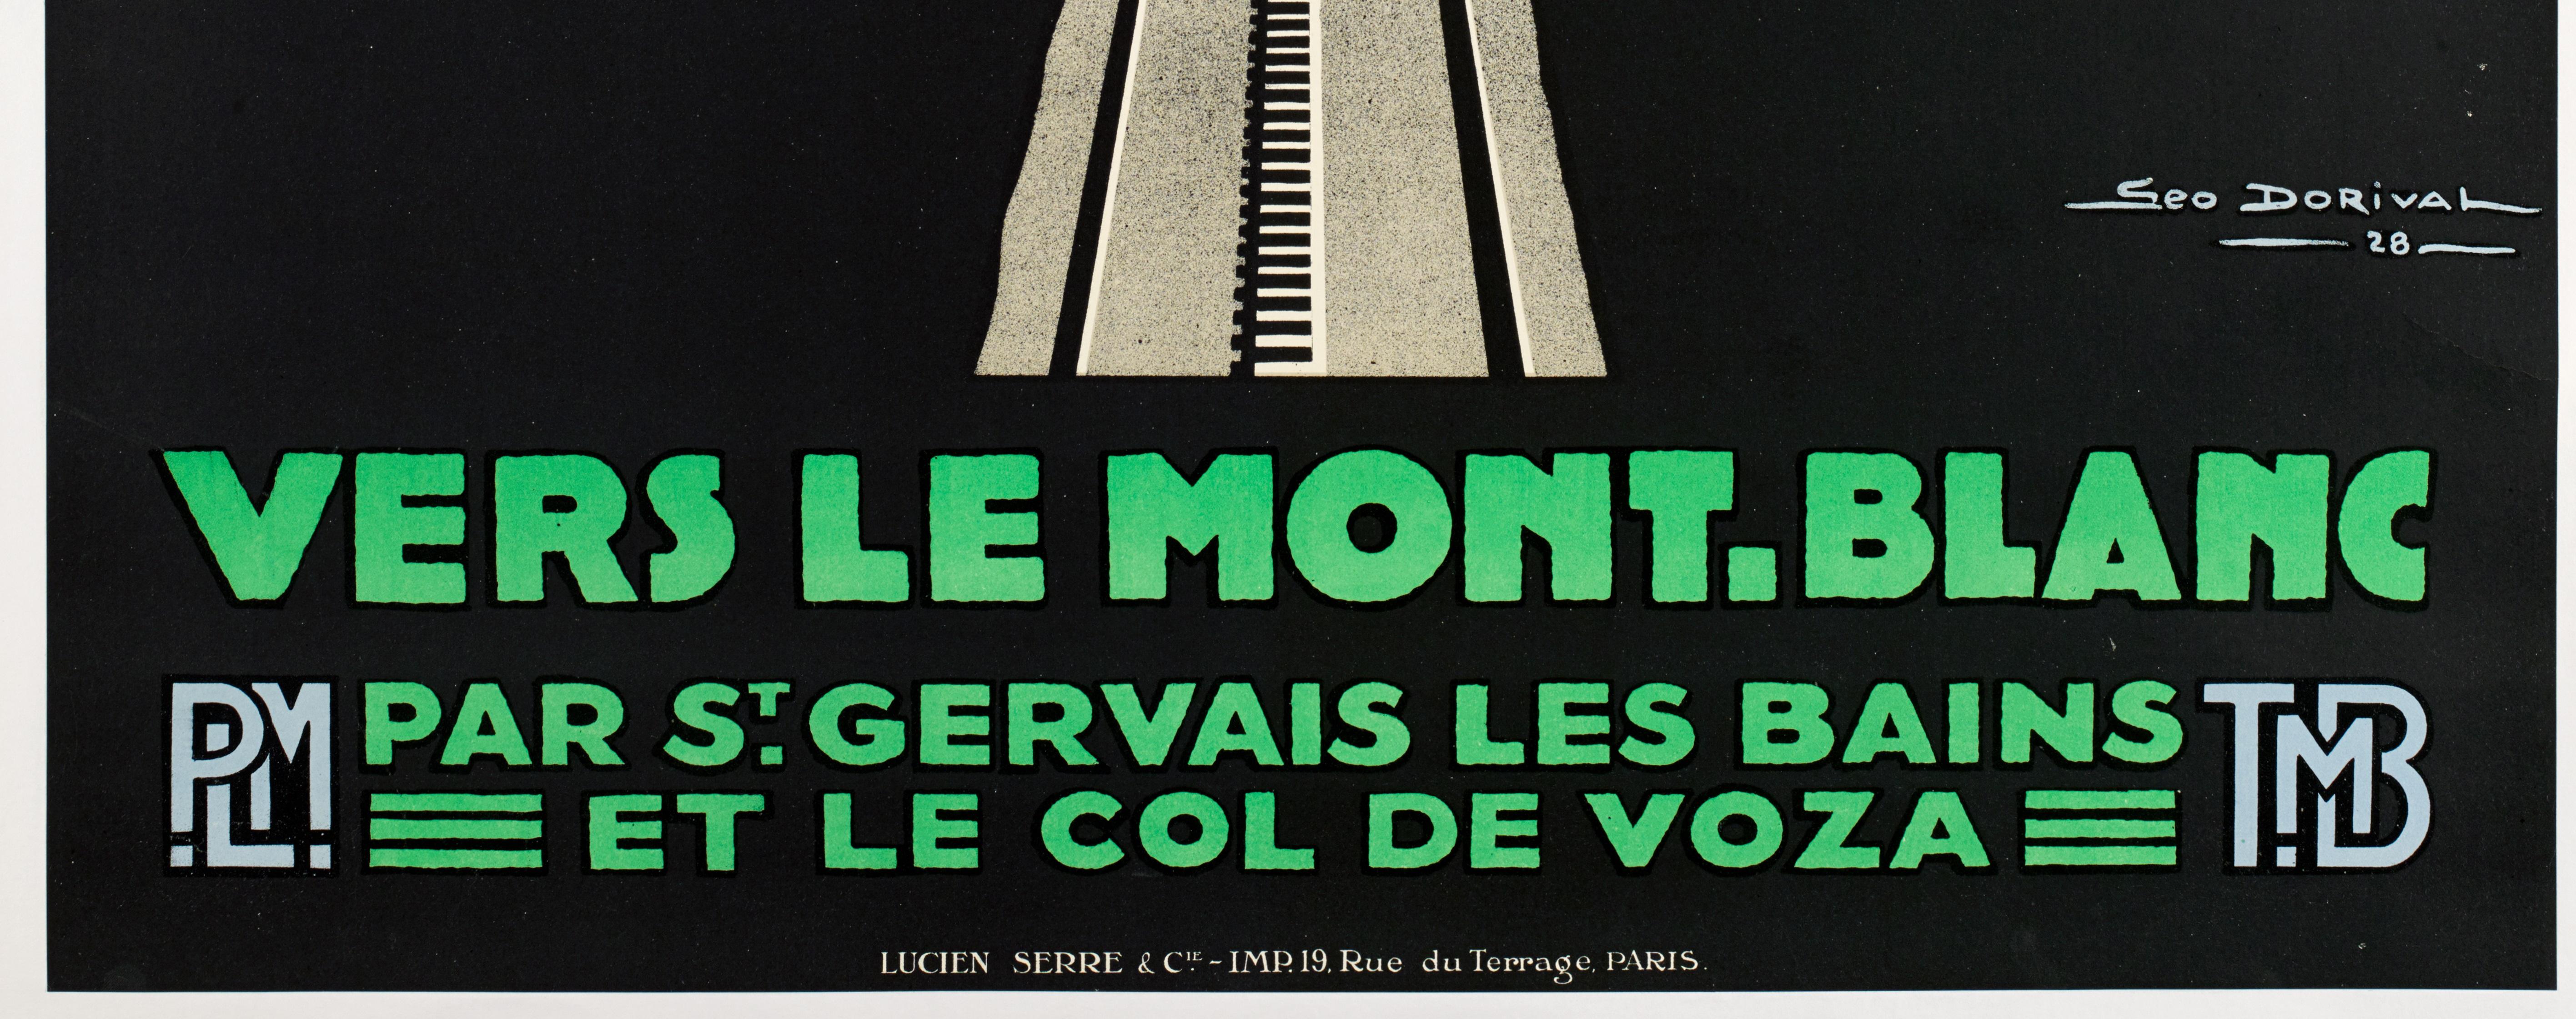 Geo Dorival, Set of 3 Original PLM Poster, Le Mont-Blanc, Mountain Art Deco 1928 For Sale 3